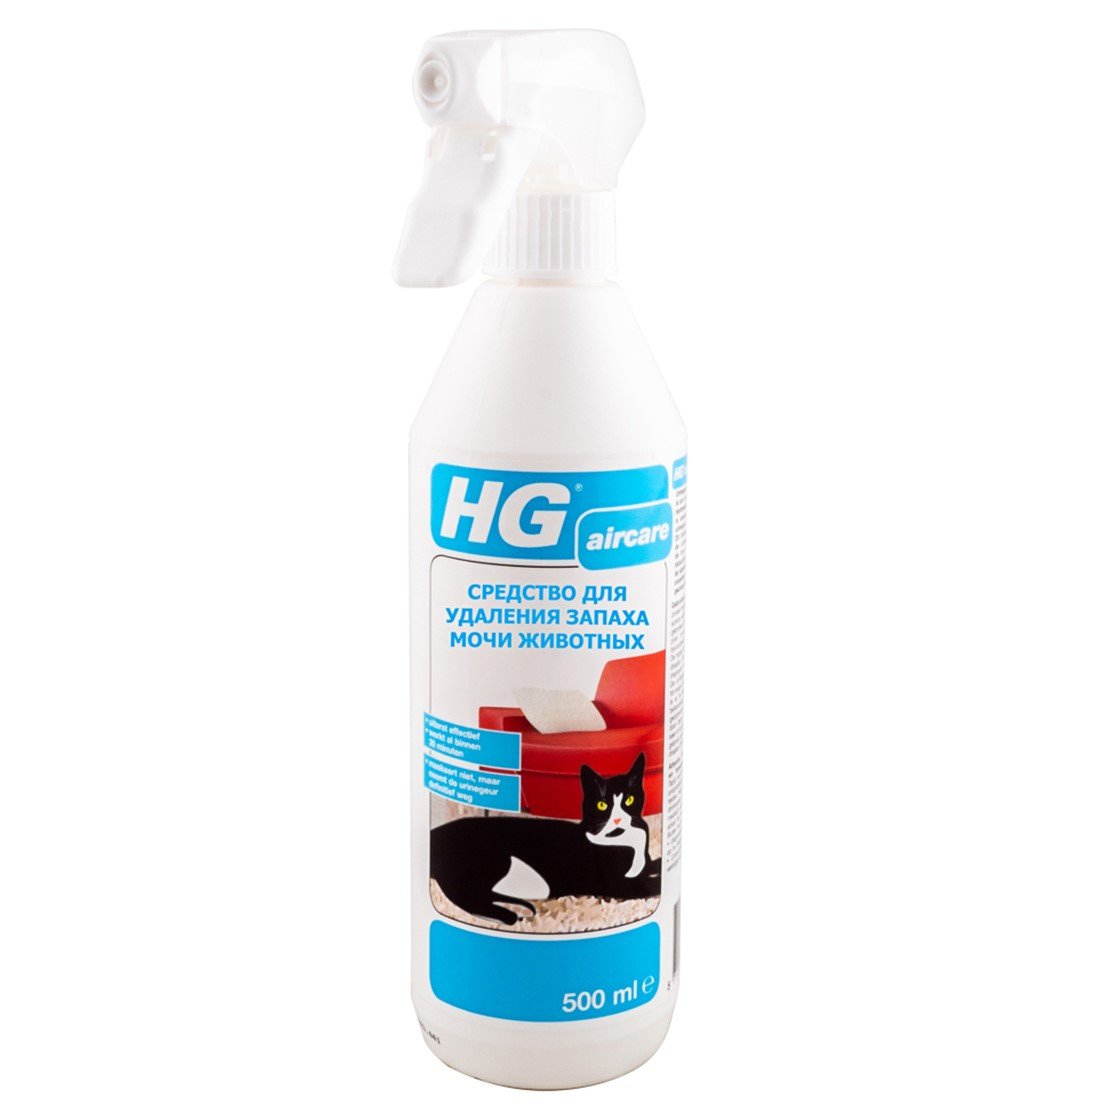 Засіб для видалення запаху сечі тварин HG, 500 мл (653050161) - фото 1